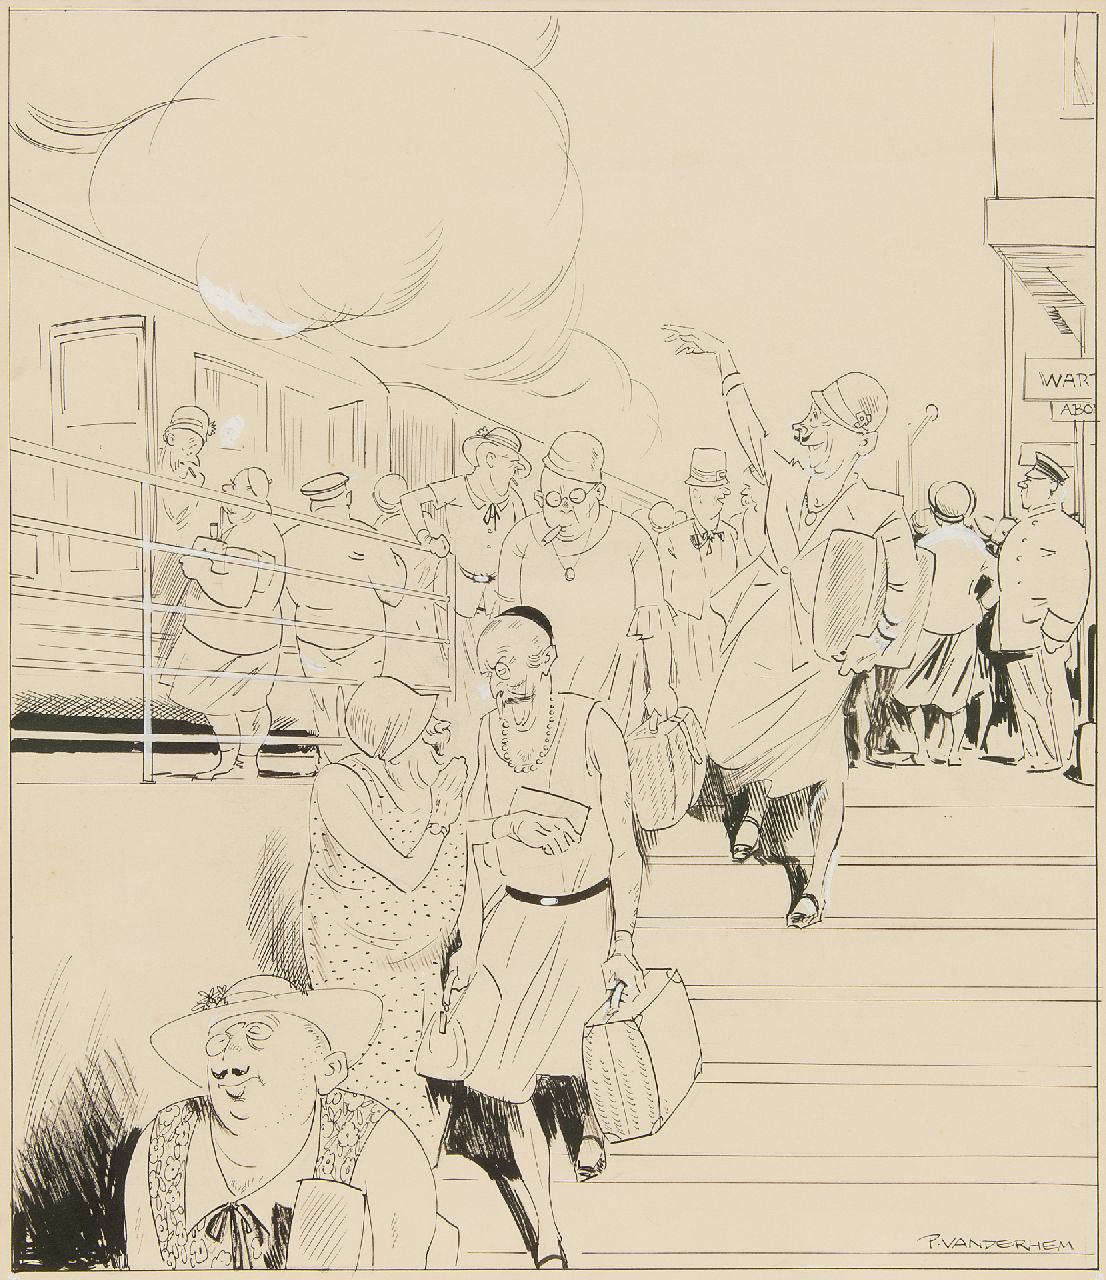 Hem P. van der | Pieter 'Piet' van der Hem | Aquarellen en tekeningen te koop aangeboden | Op het station, inkt en aquarel op papier 49,8 x 35,0 cm, gesigneerd rechtsonder